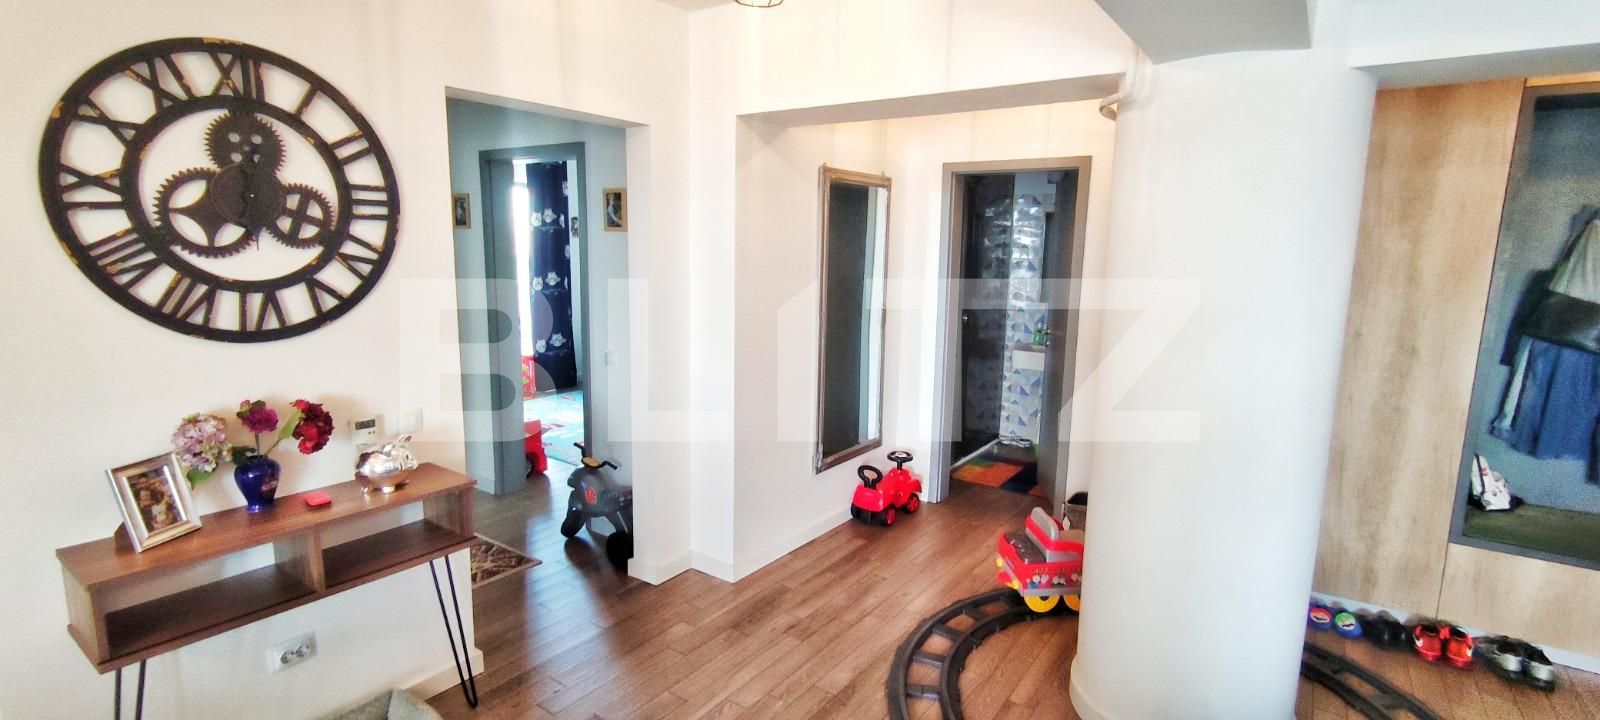 Apartament in bloc nou, 3 camere decomandate, Severinului, zona Bila